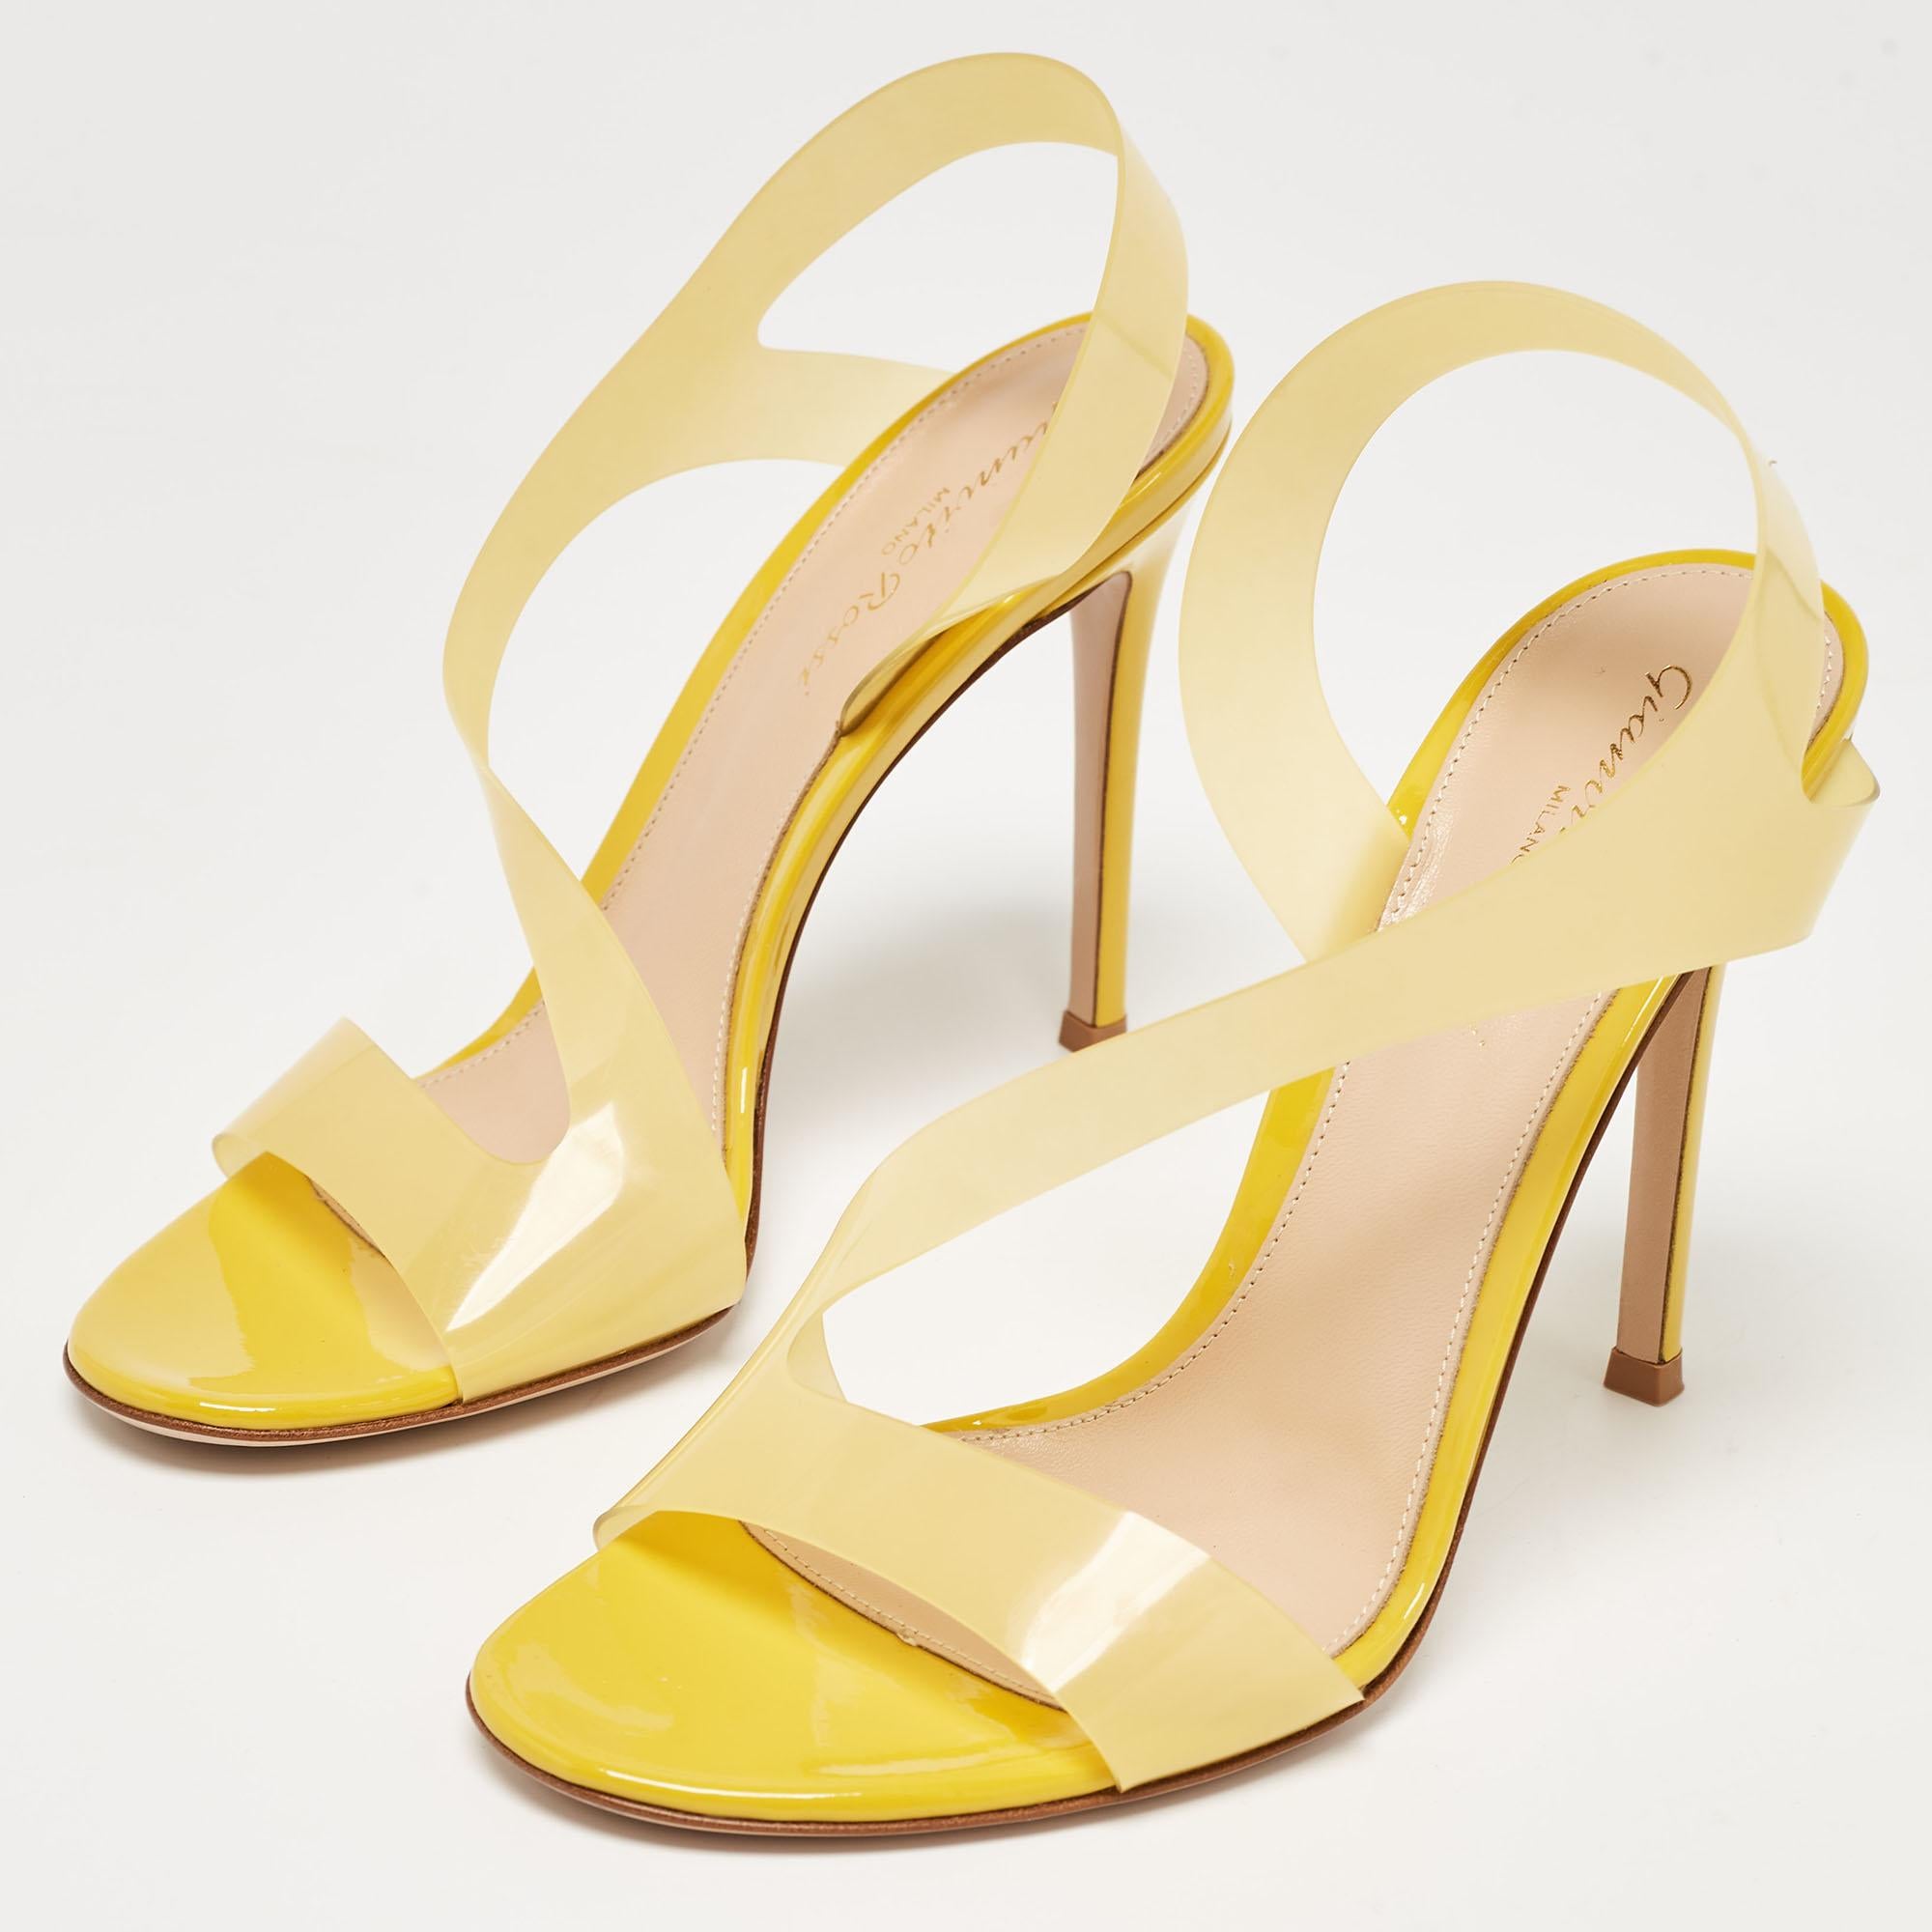 Gianvito Rossi Yellow PVC Metropolis Sandals Size 37 In New Condition For Sale In Dubai, Al Qouz 2